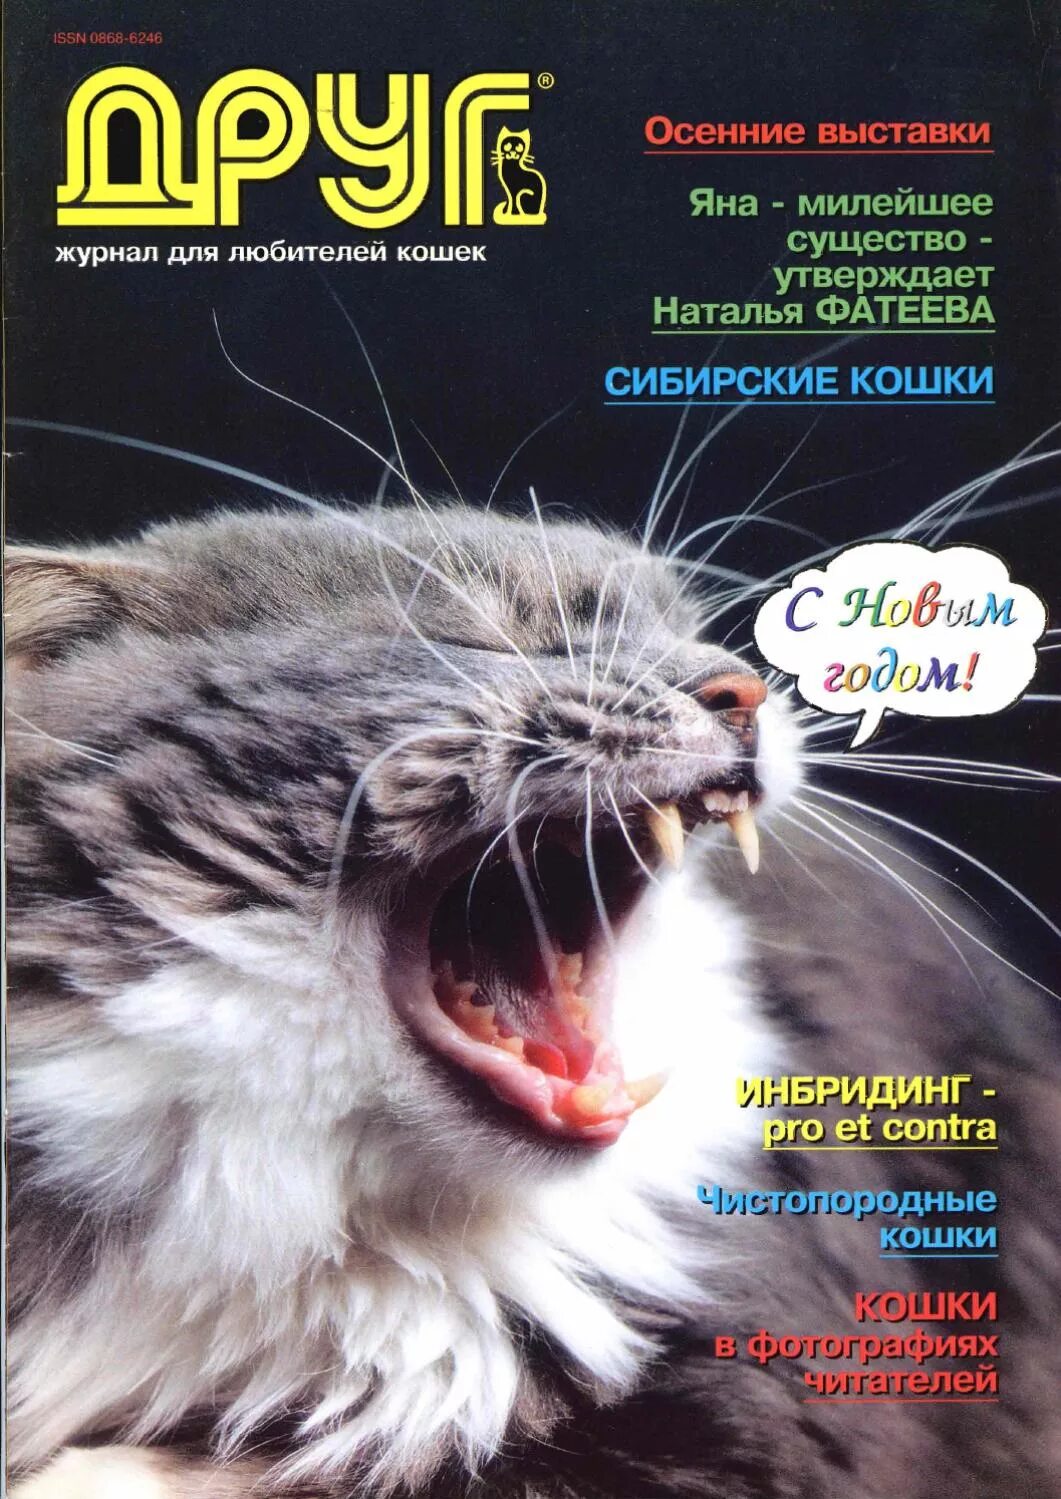 Сайт журнала друг. Журнал друг кошек. Журнал для любителей кошек. Друг любимые кошки журнал.